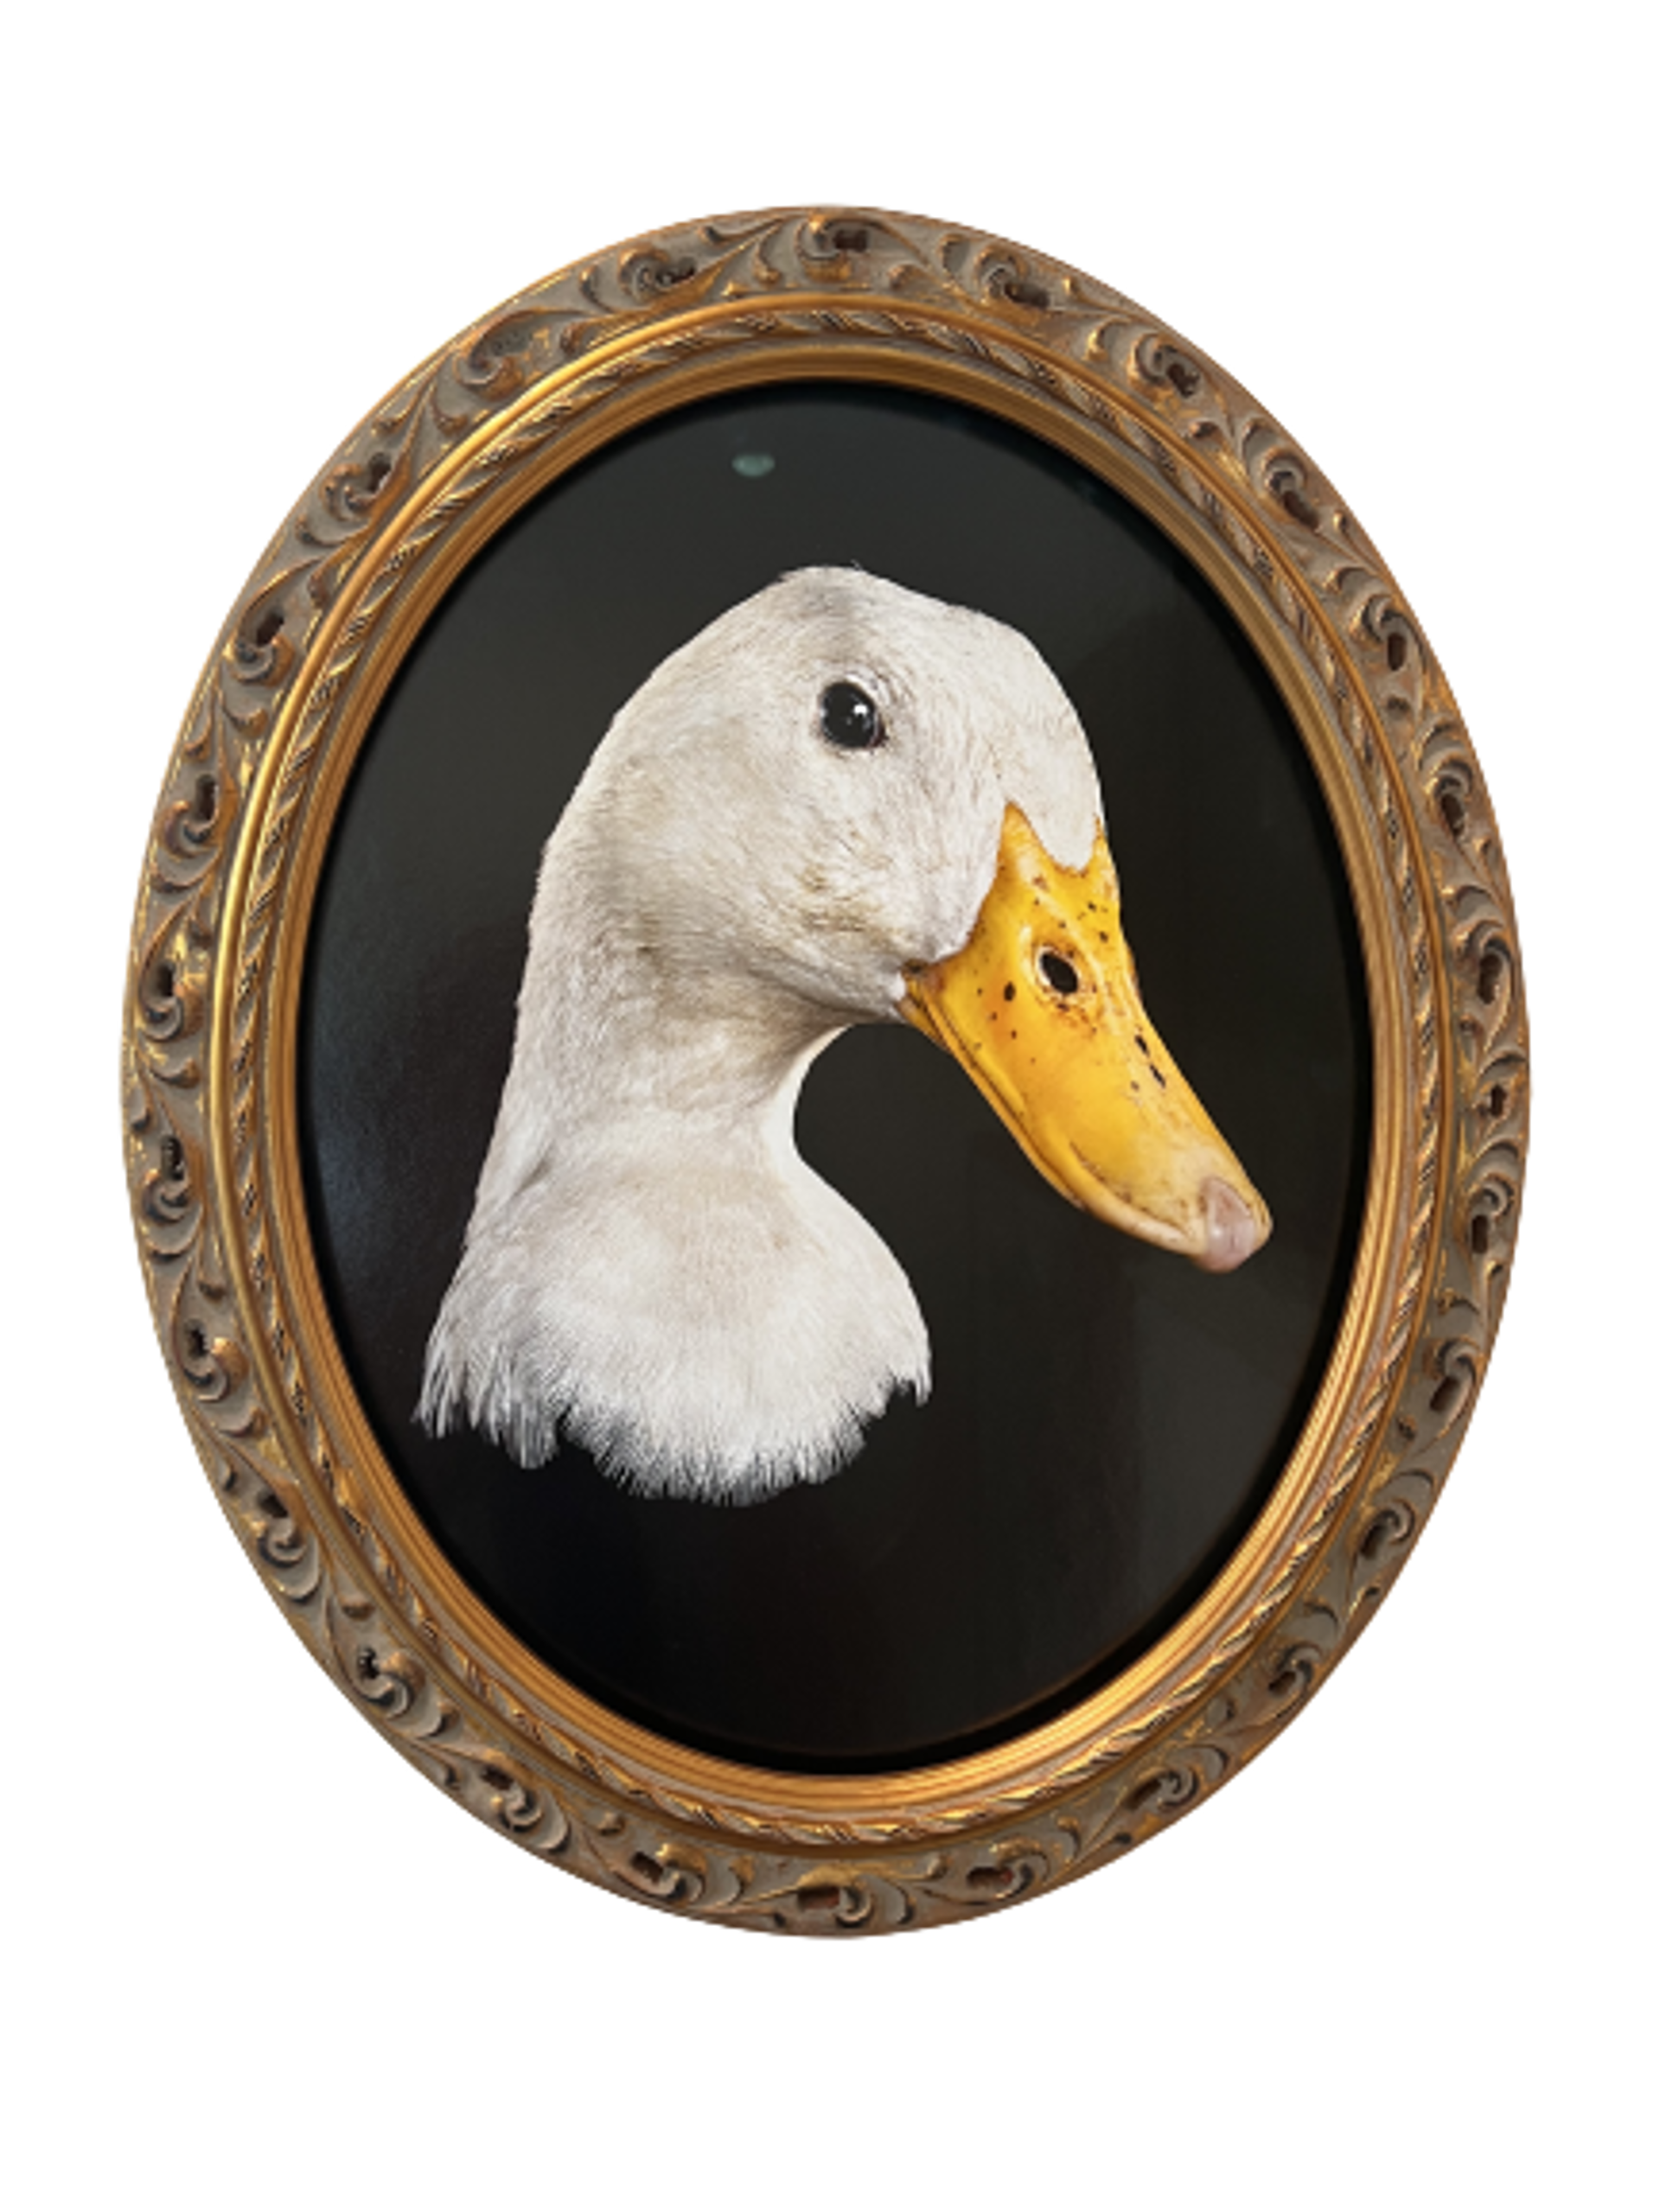 Peking Duck, White Duck Head by Evan Kafka